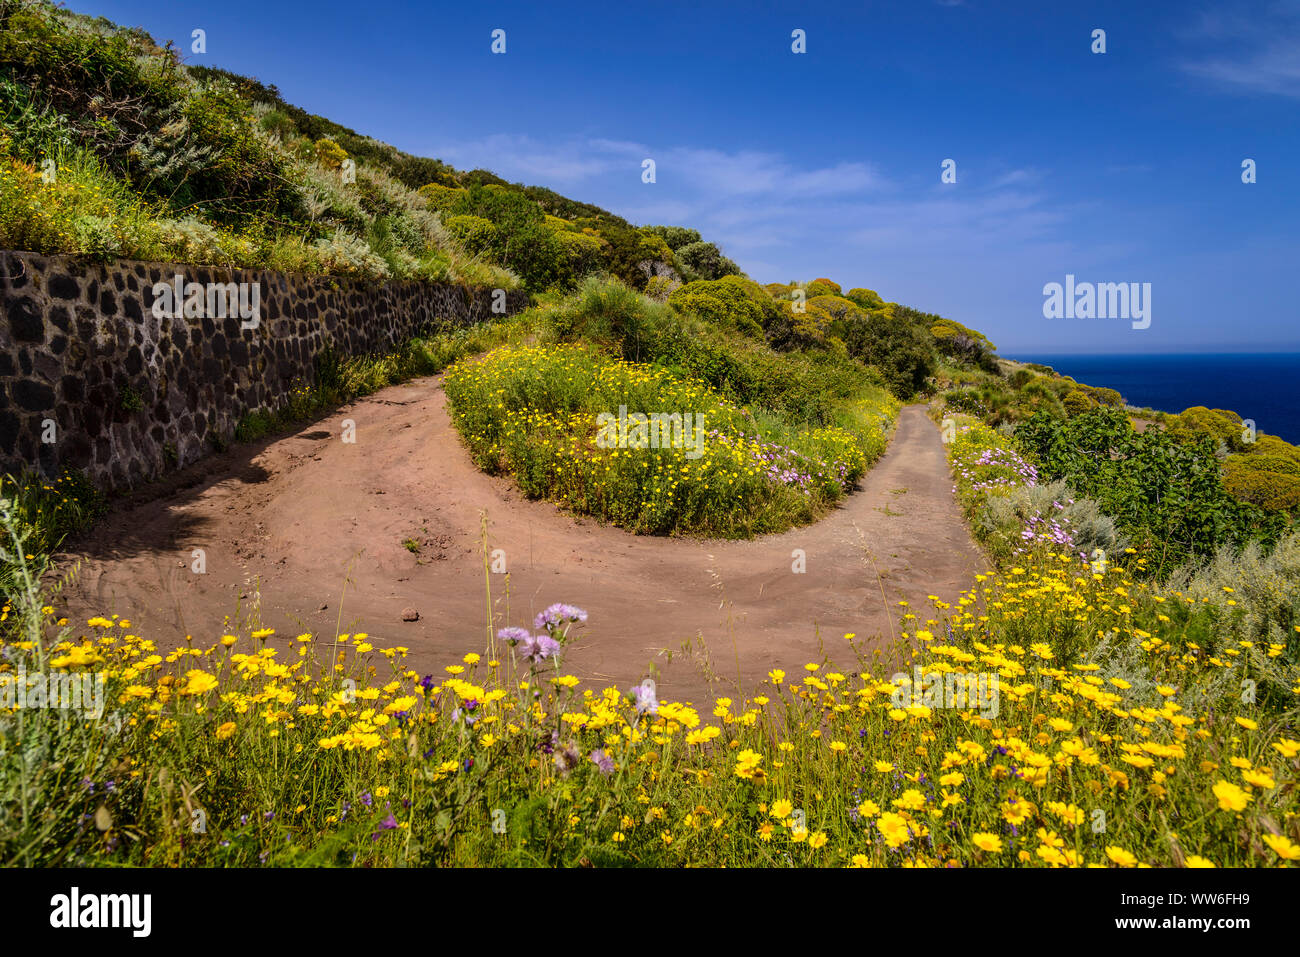 Italy, Sicily, Aeolian Islands, Stromboli, hiking trail to Sciara del Fuoco Stock Photo